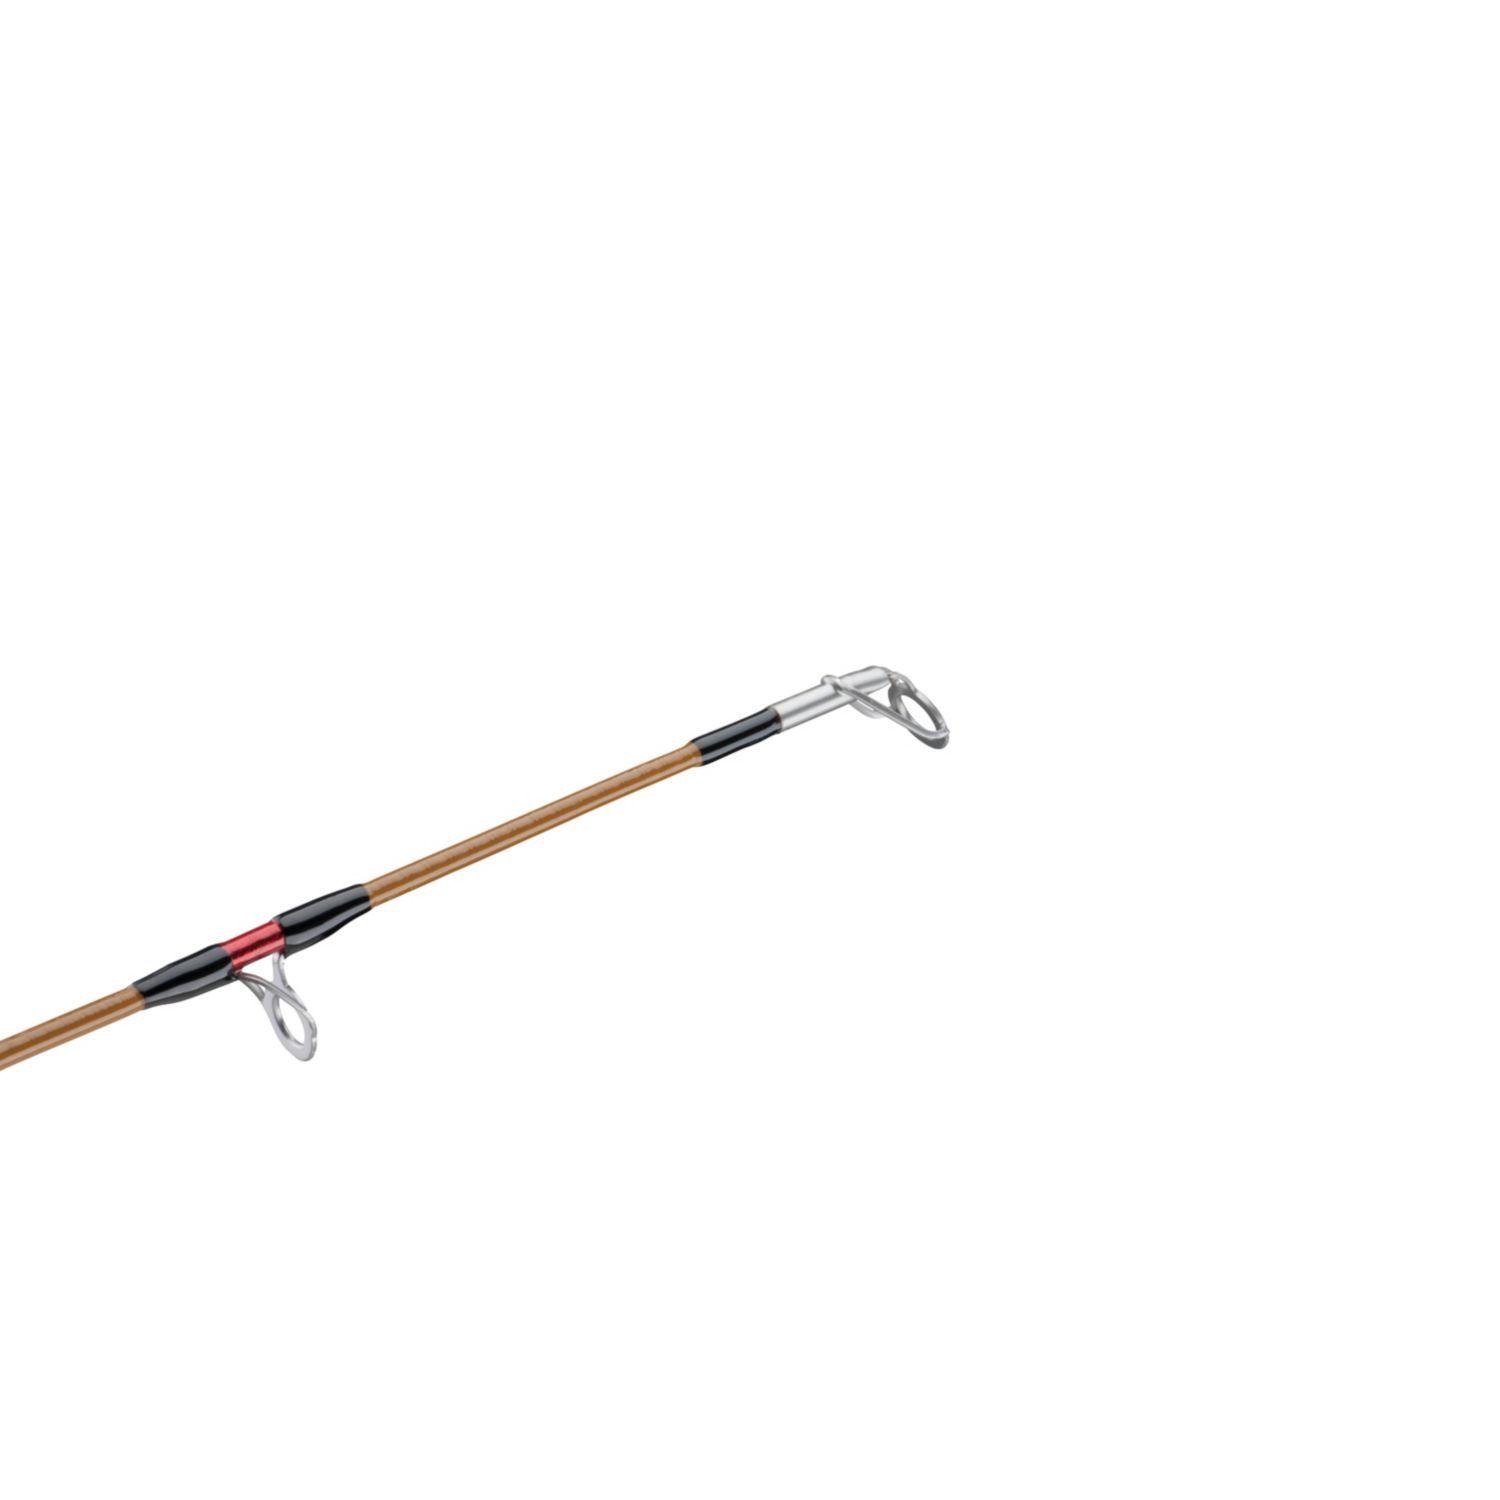 7' Ugly Stik Tiger® Spinning Rod, Medium Power